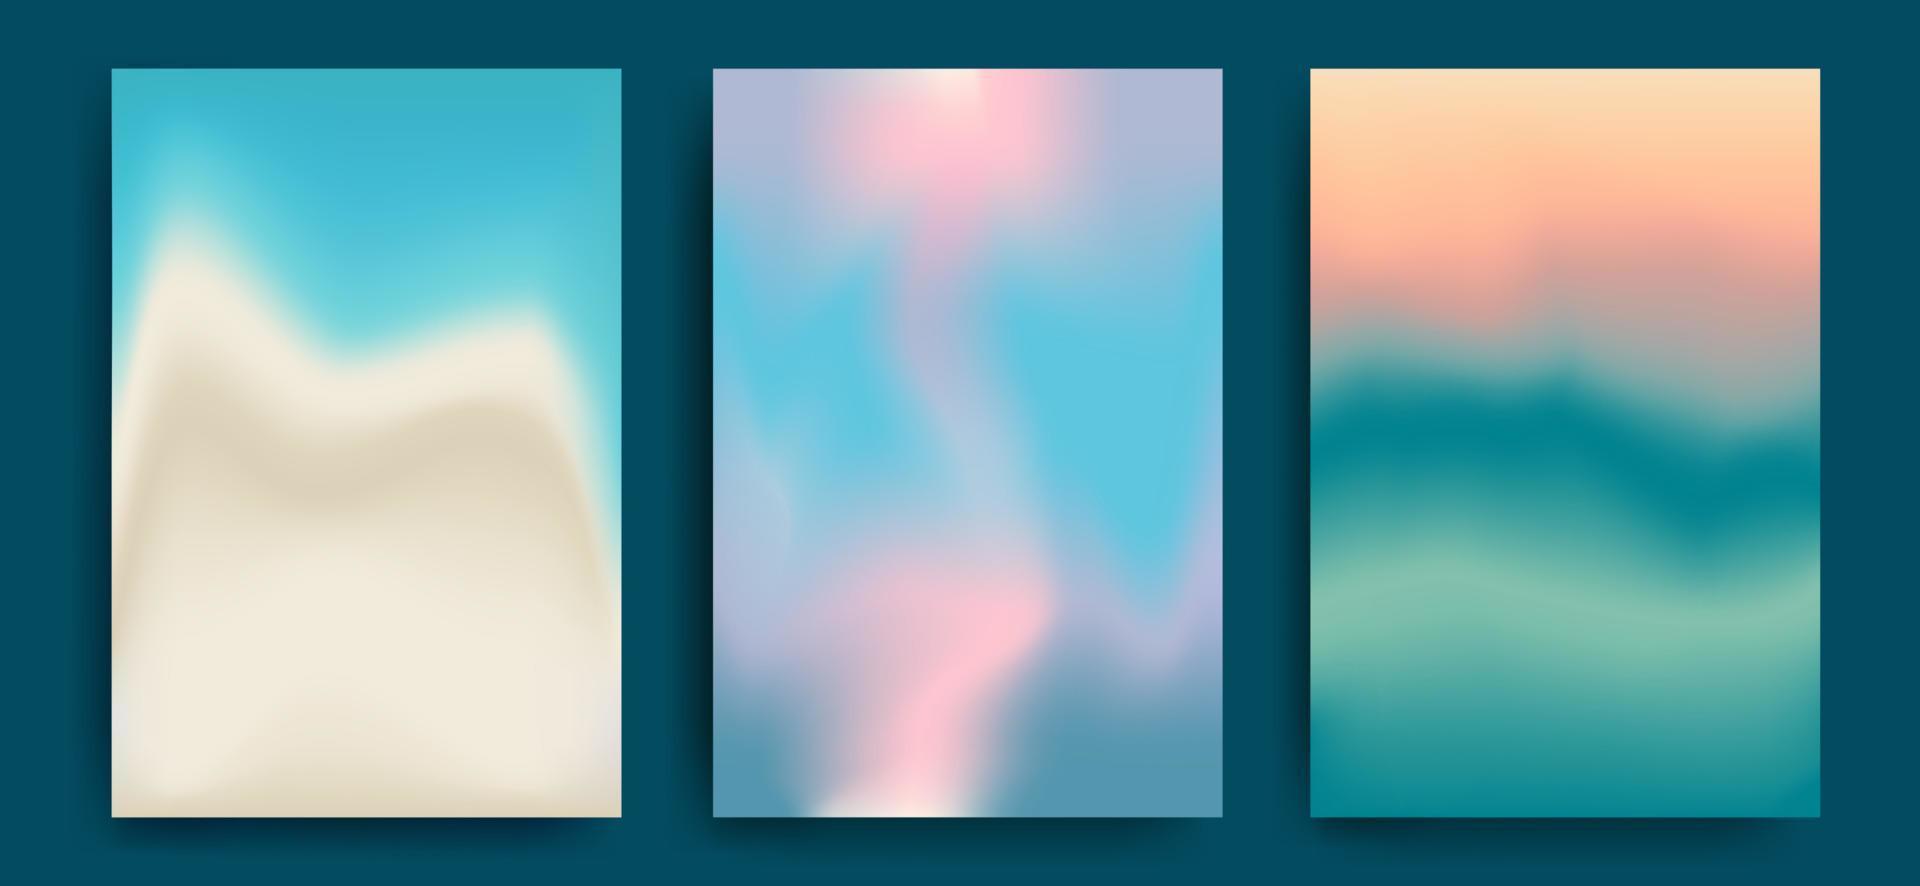 set di gradienti vettoriali in colori pastello. per copertine, sfondi, branding e altri progetti. summer palette.vbeach, mare, cielo al tramonto. illustrazione vettoriale